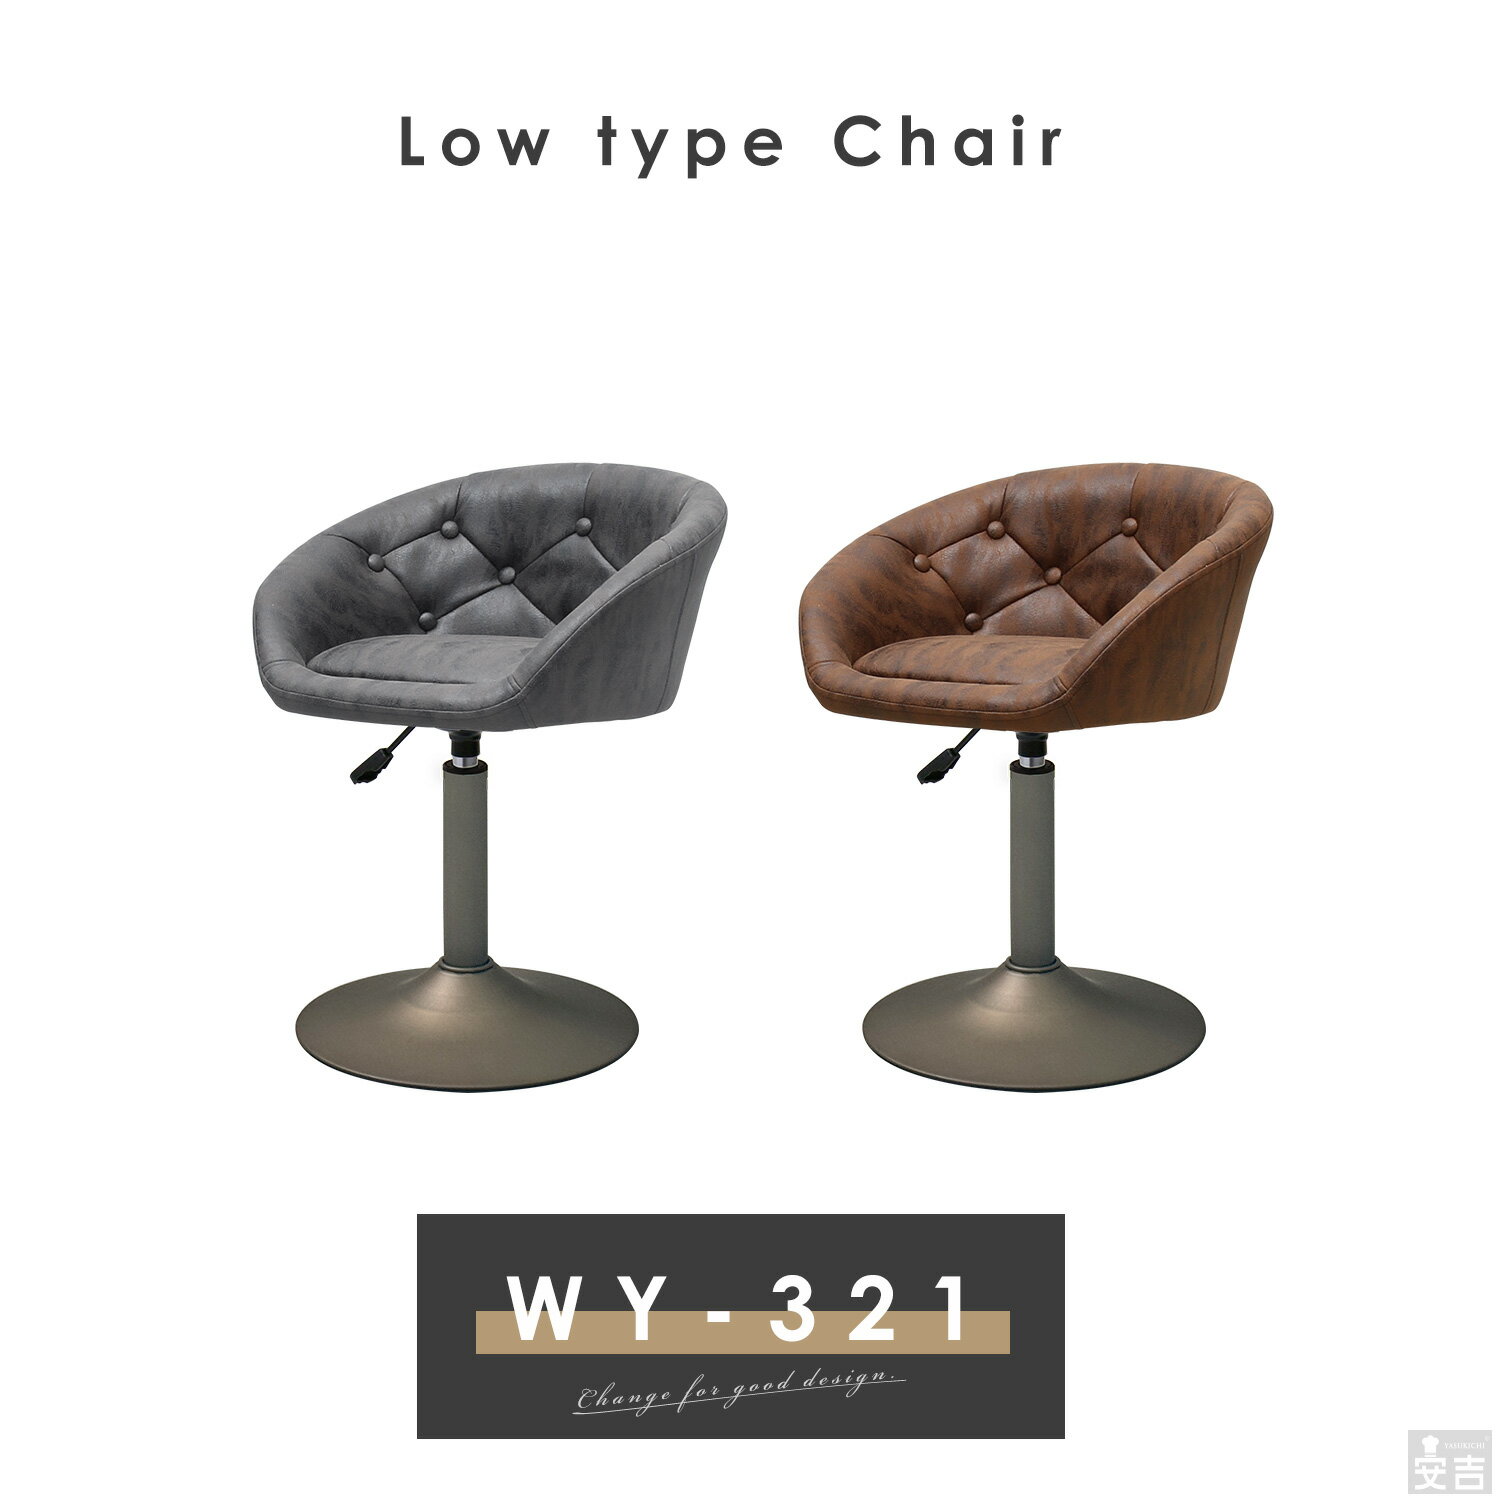 カウンターチェア ロータイプ WY-321VS ヴィンテージ セピアブロンズ脚タイプ【低め】【椅子】【バーチェア】【背もたれ付き】【回転】【昇降式】【ローチェア】【低いカウンターチェアー】【低い椅子】【ロータイプ】【回転チェアー】